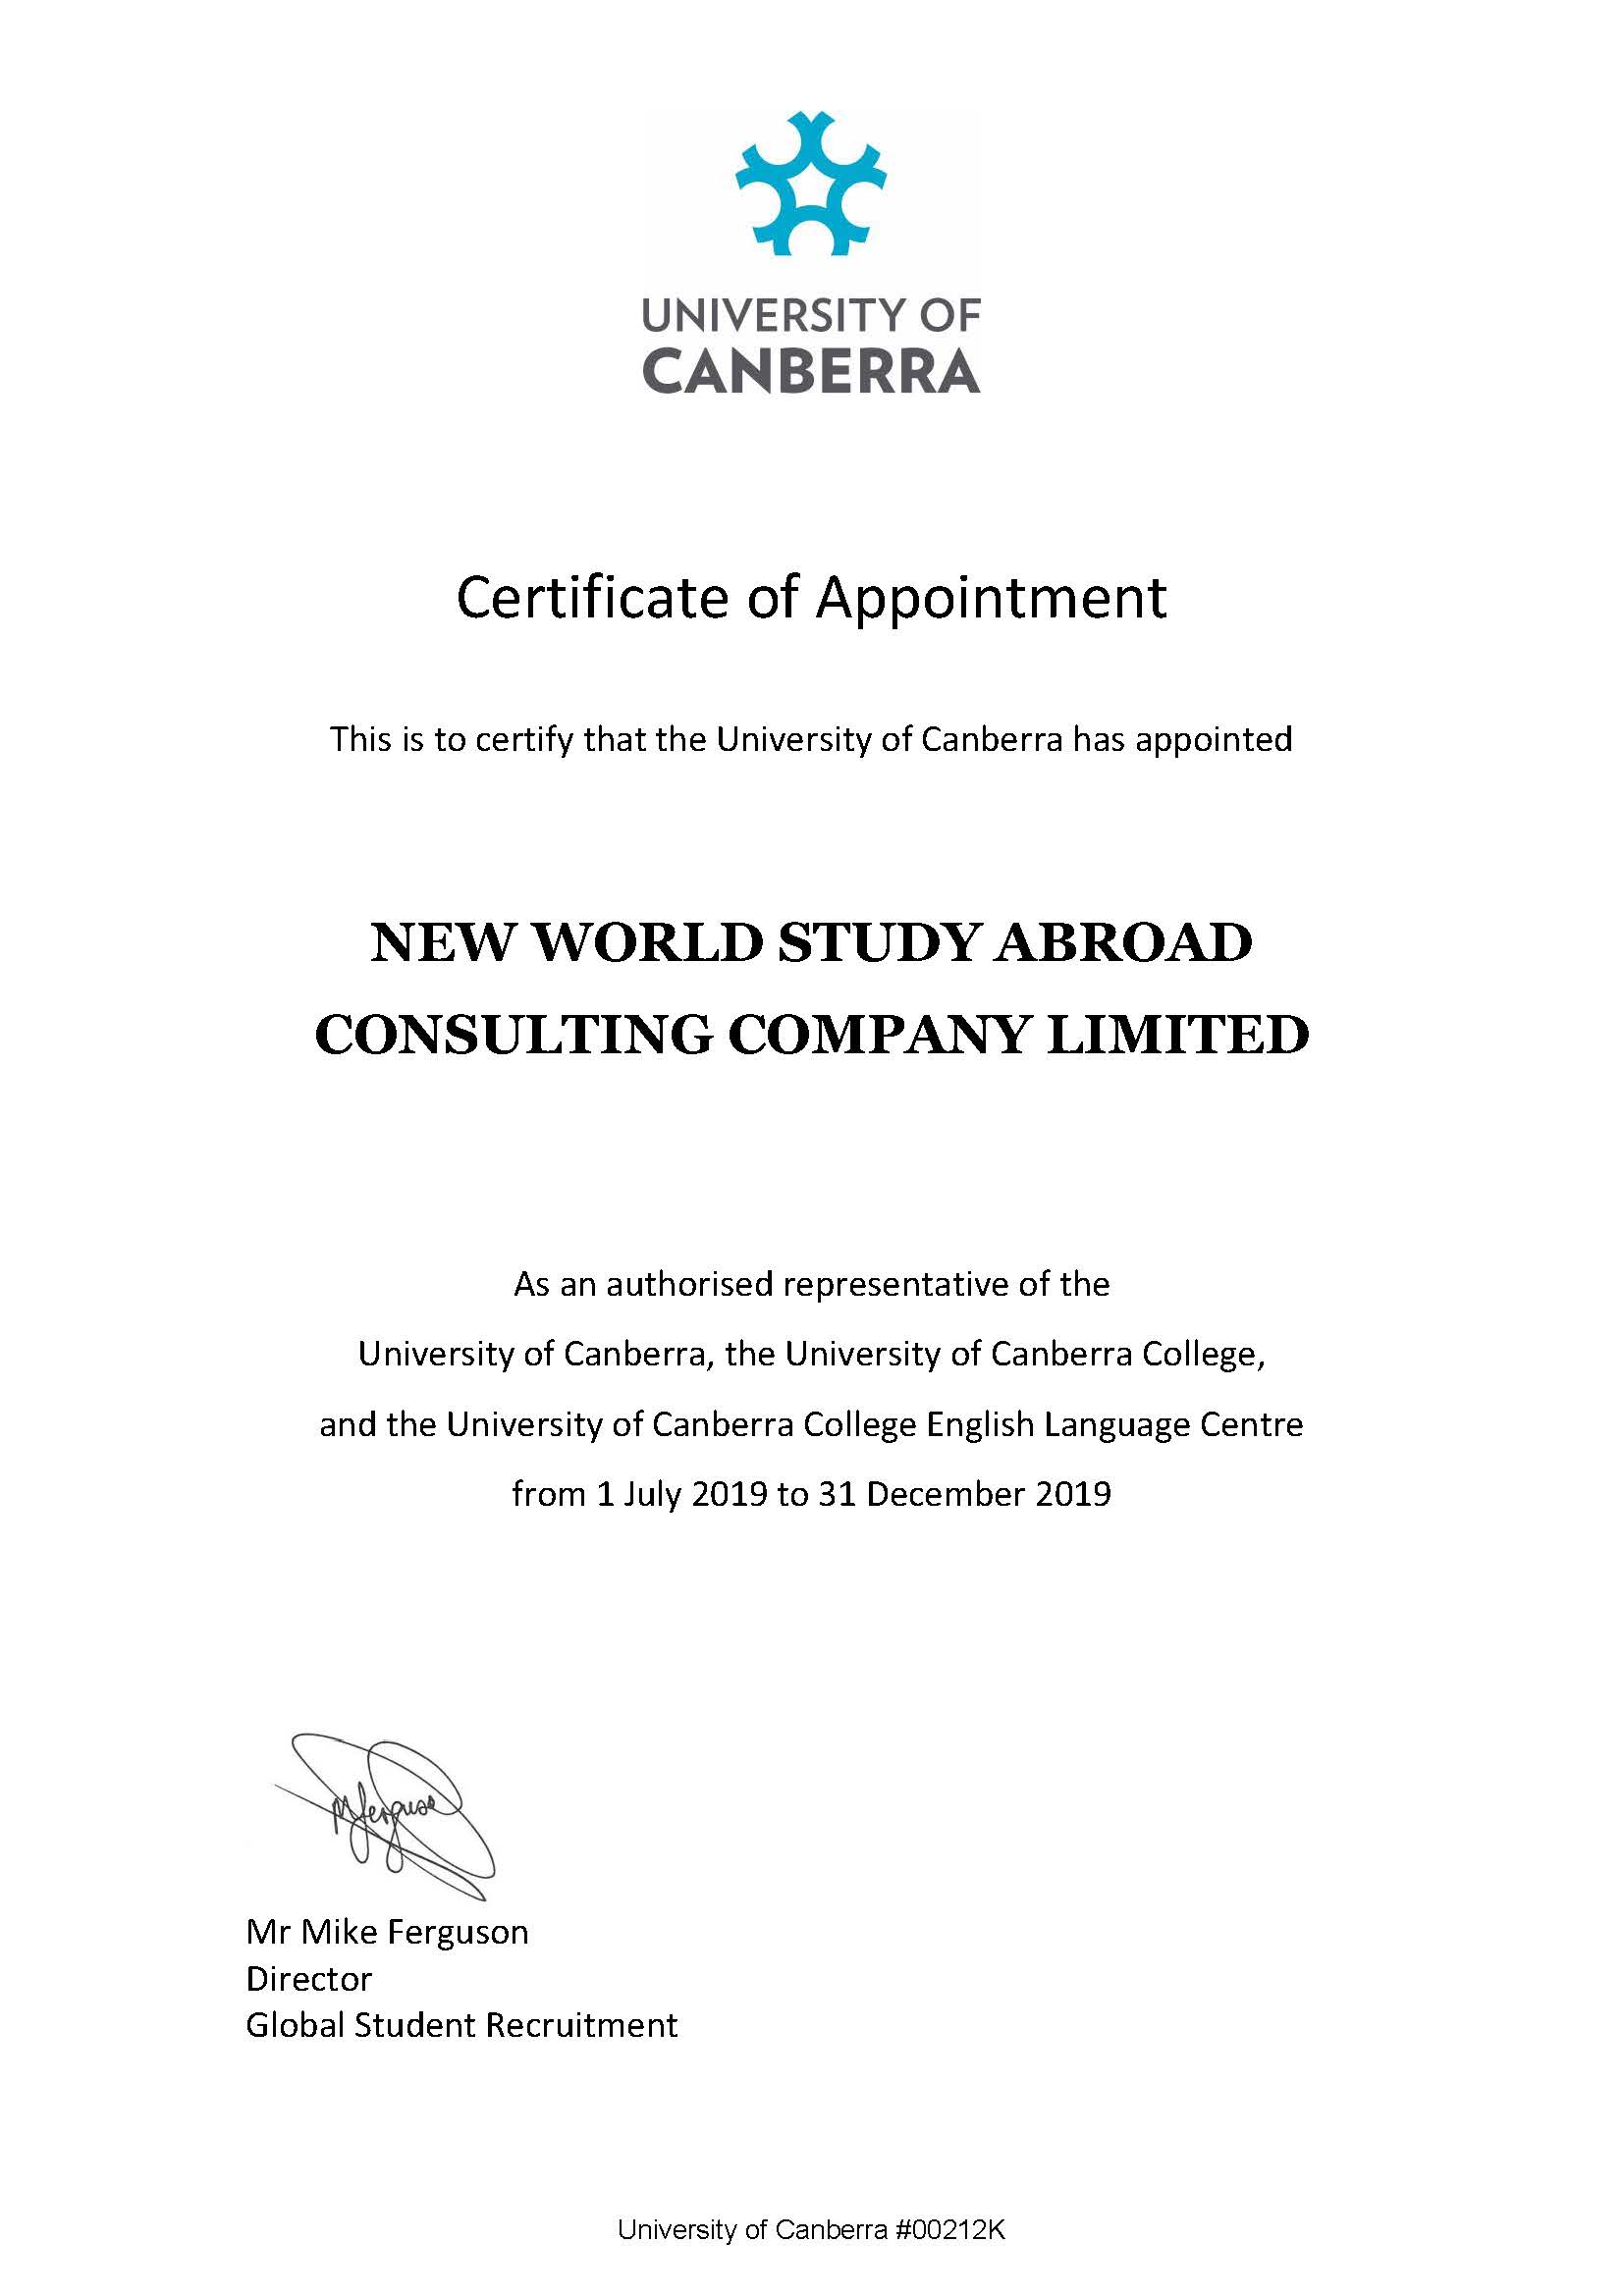 University of Canberra - Úc